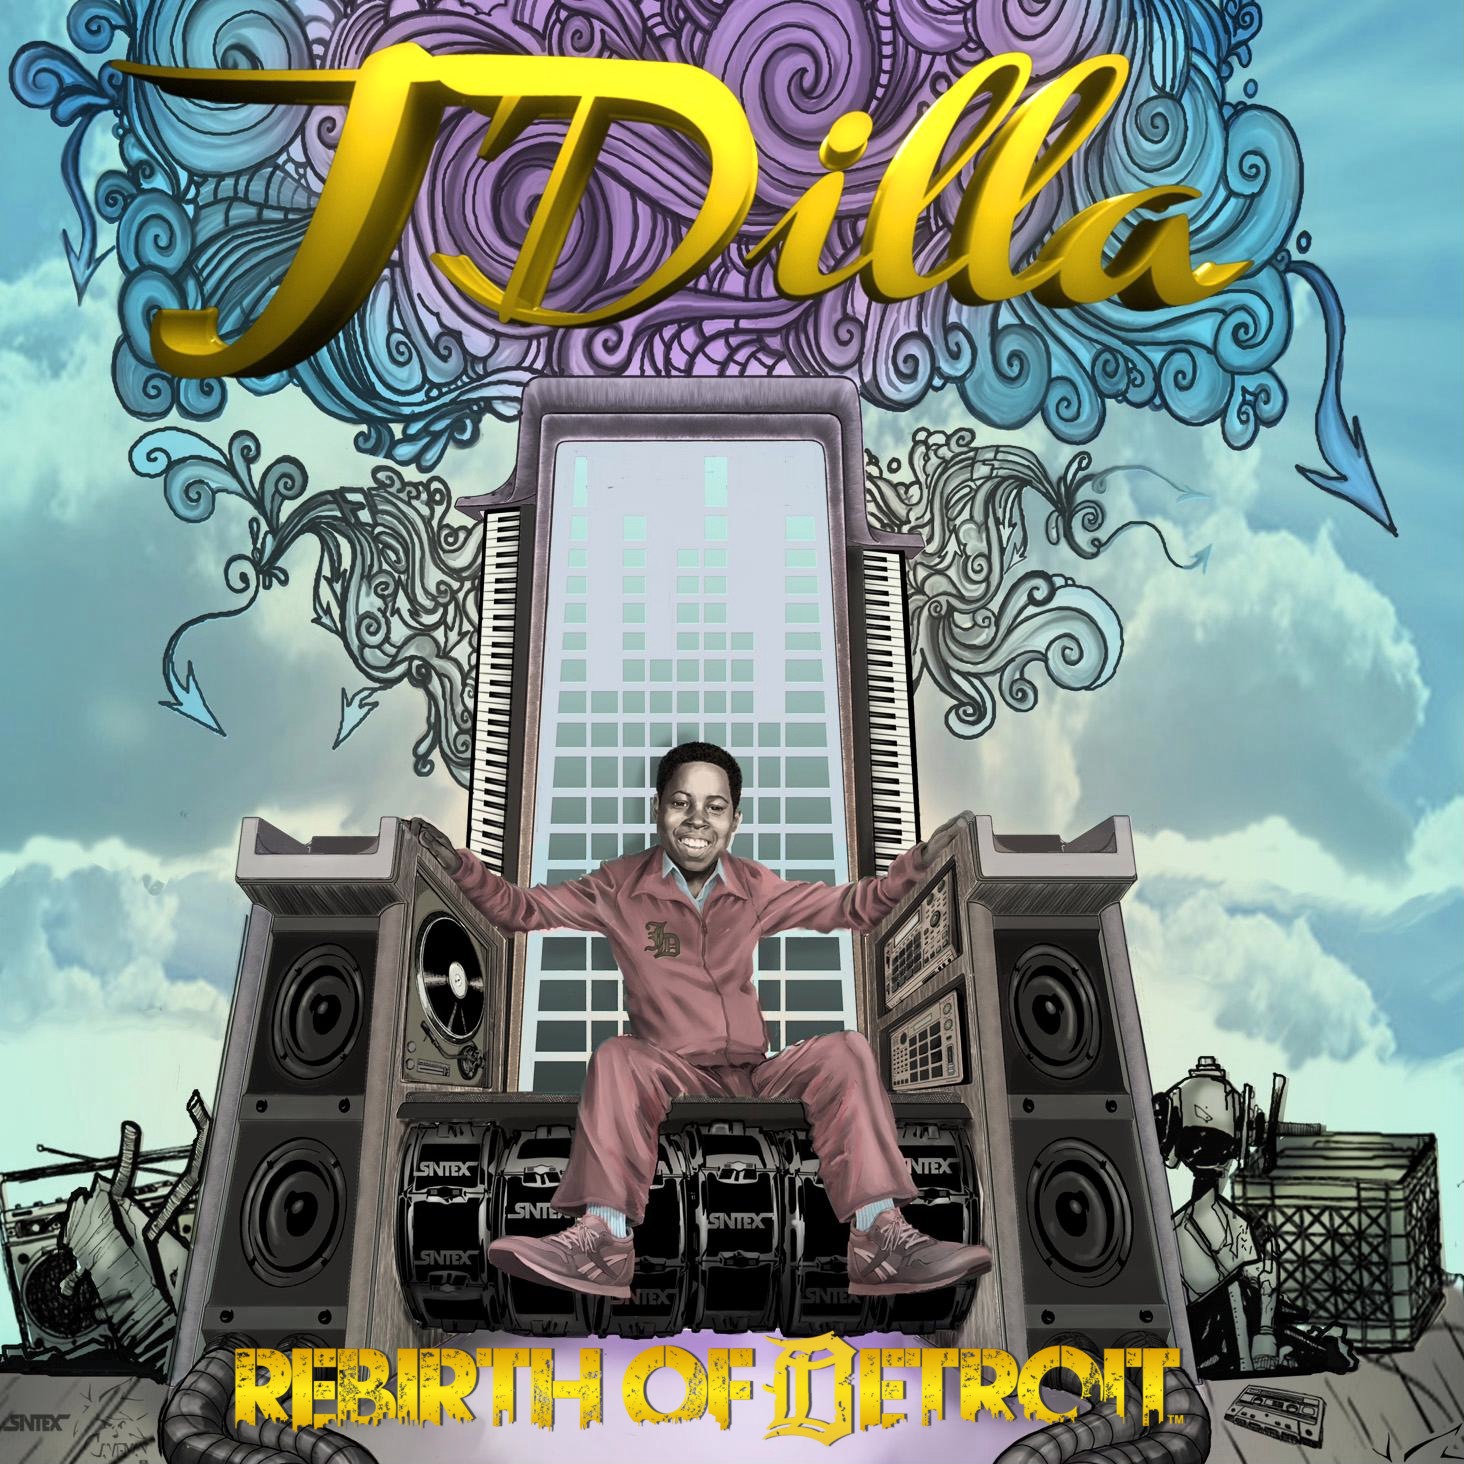 AUDIO: J DILLA “REBIRTH OF DETROIT” (FULL ALBUM STREAM + DOWNLOAD) – HIP HOP ...